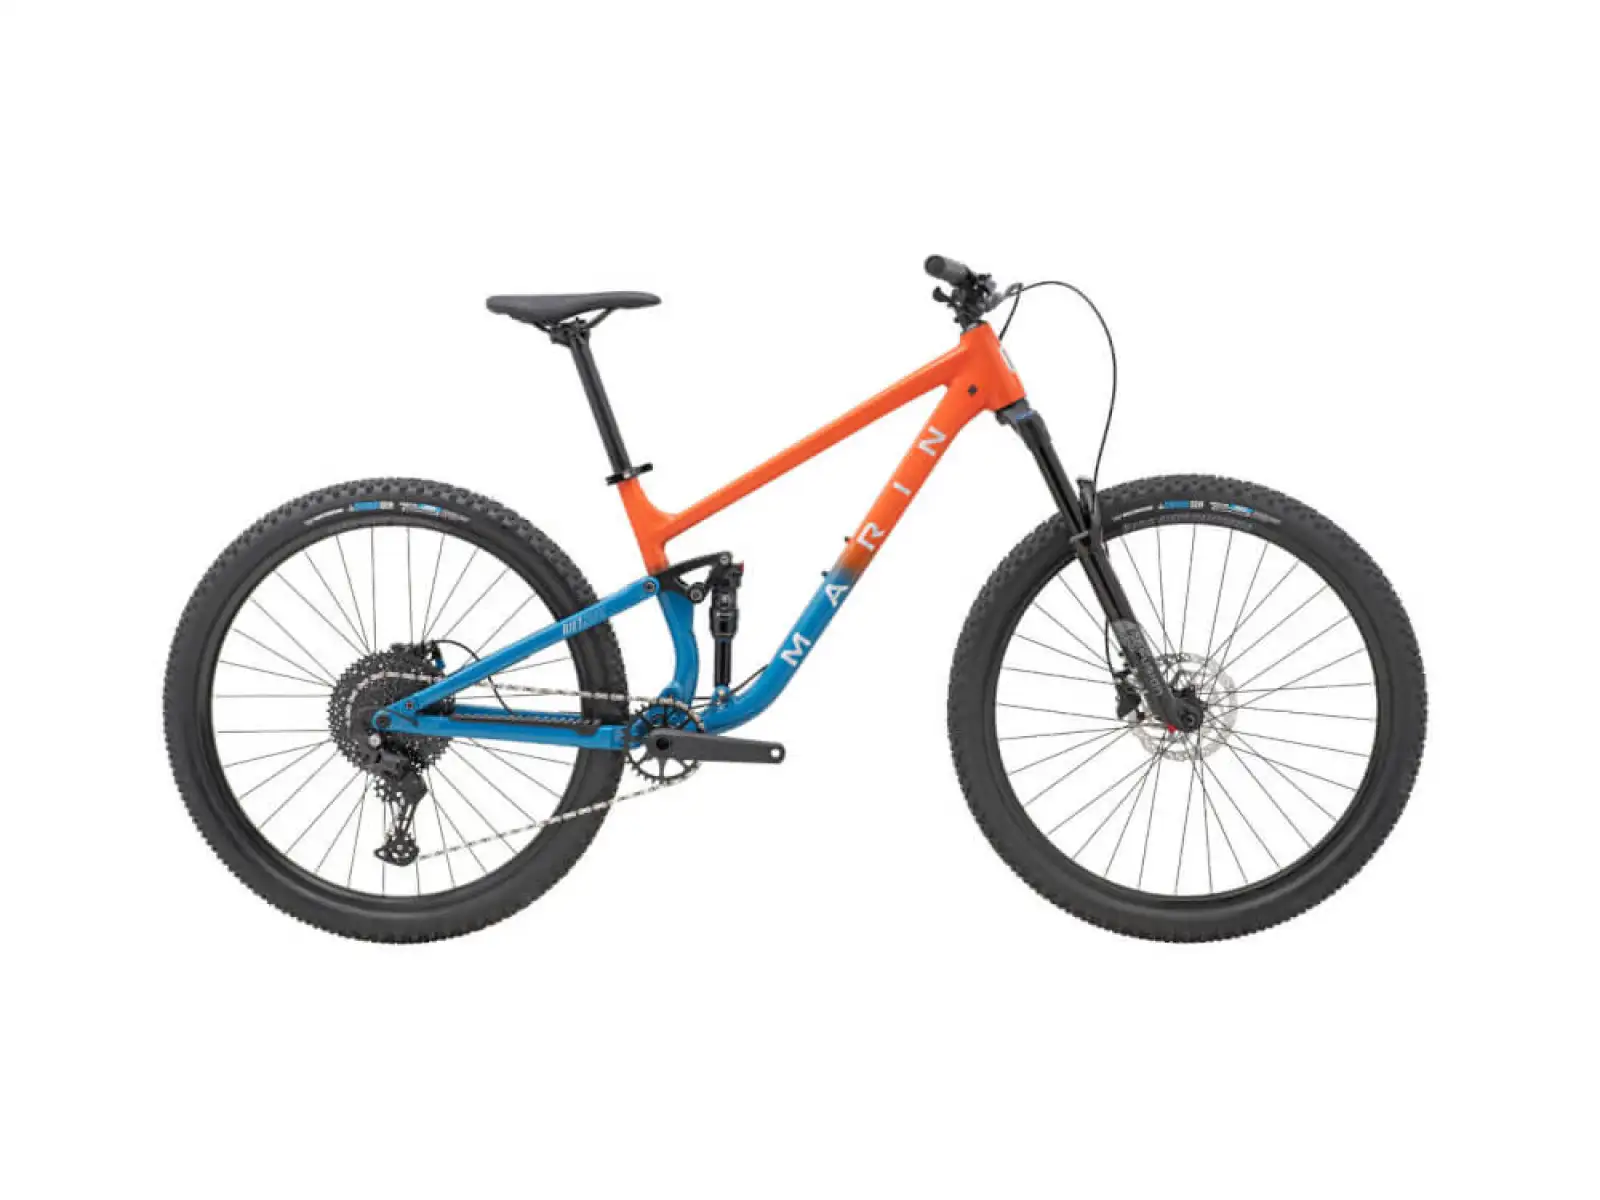 Horský bicykel Marin Rift Zone 1 29" lesklý oranžový/modrý/strieborný